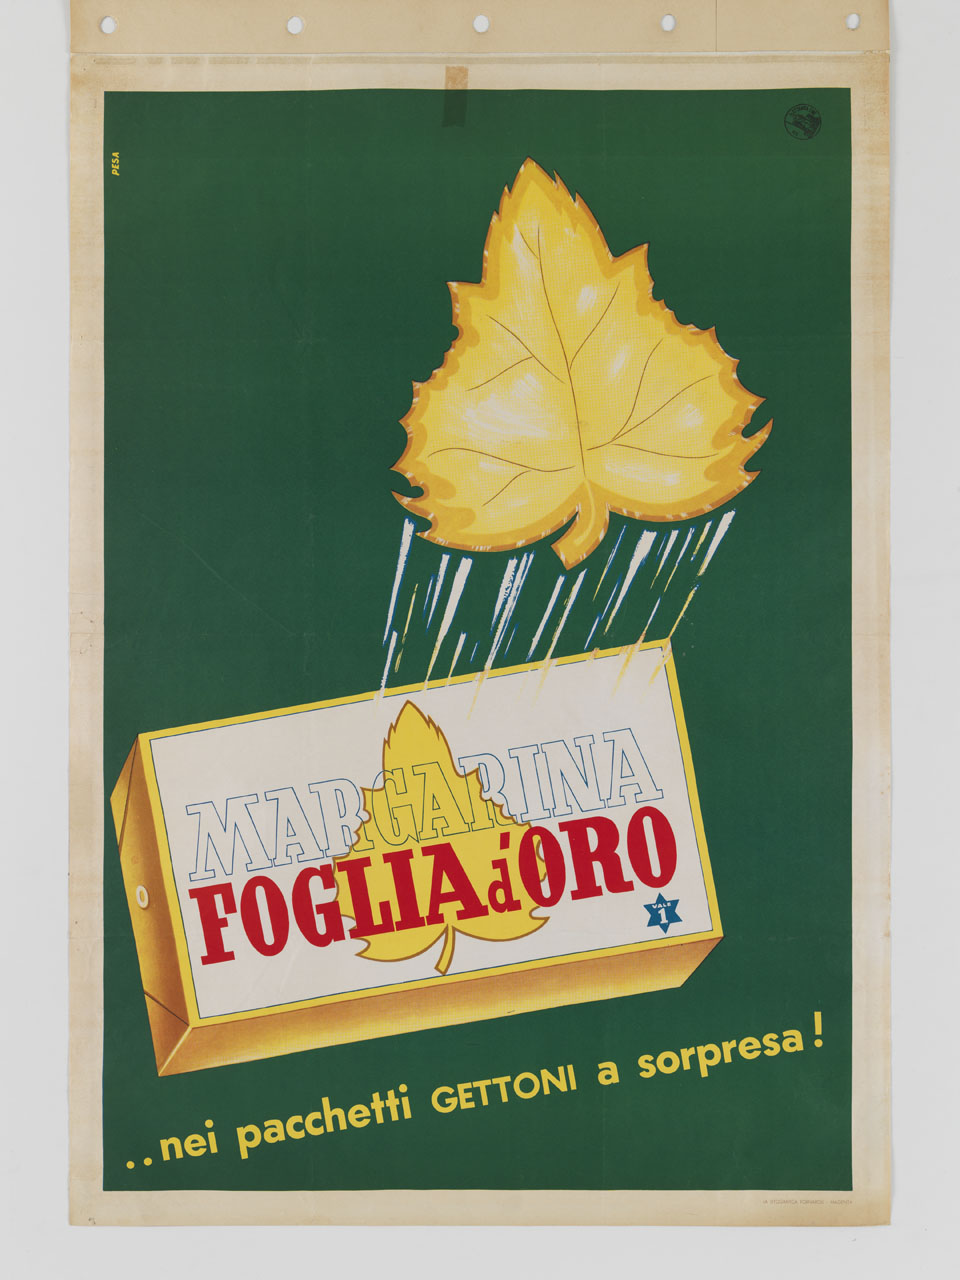 confezione di margarina promana foglia d'oro (manifesto) di Pesavento Gino (sec. XX)